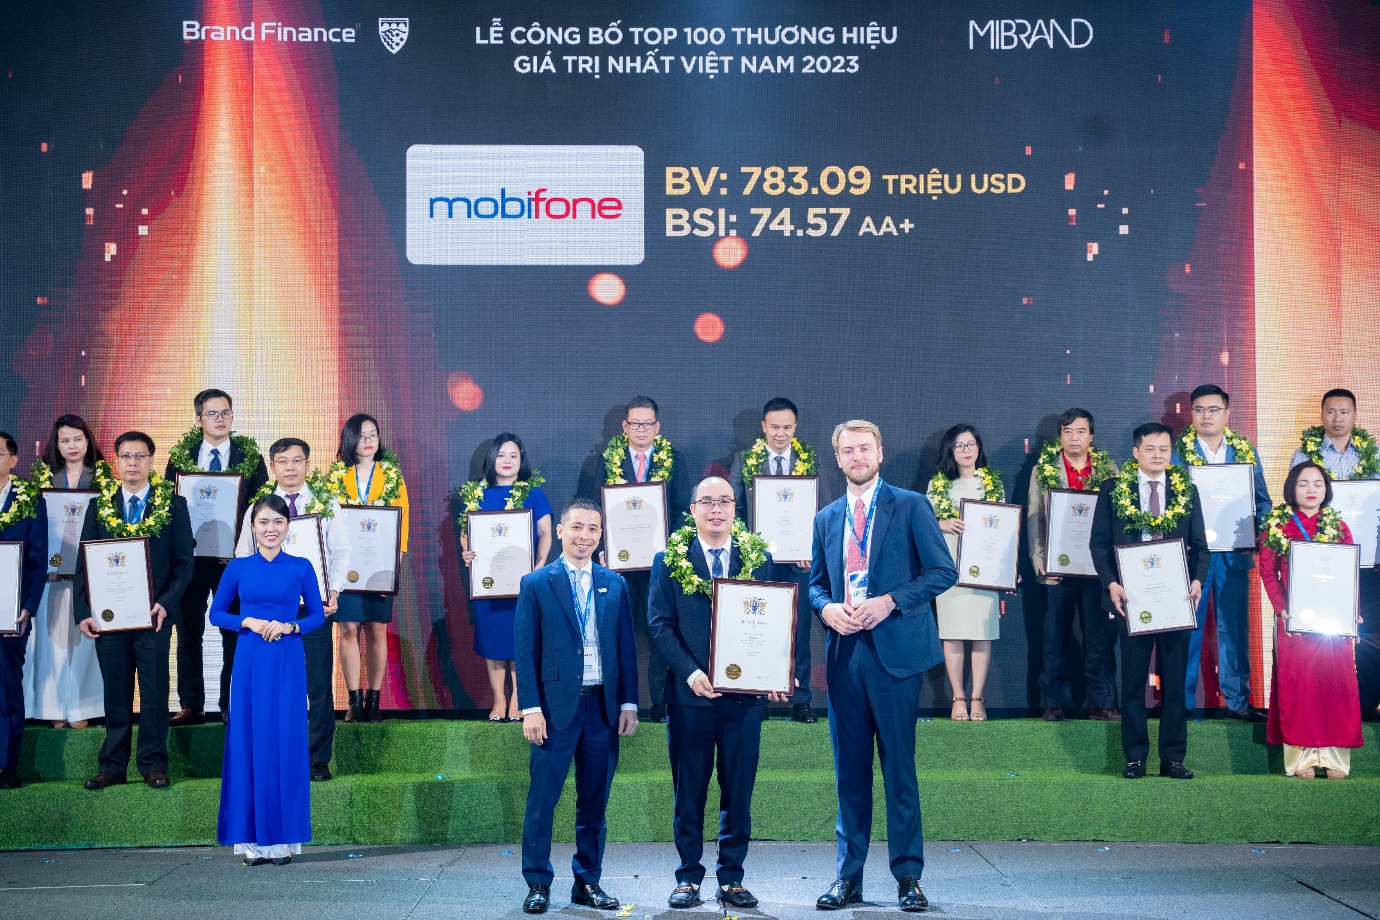 MobiFone lọt top 100 thương hiệu giá trị nhất Việt Nam, giá trị thương hiệu tăng 18,5% so với năm 2022 - Ảnh 3.